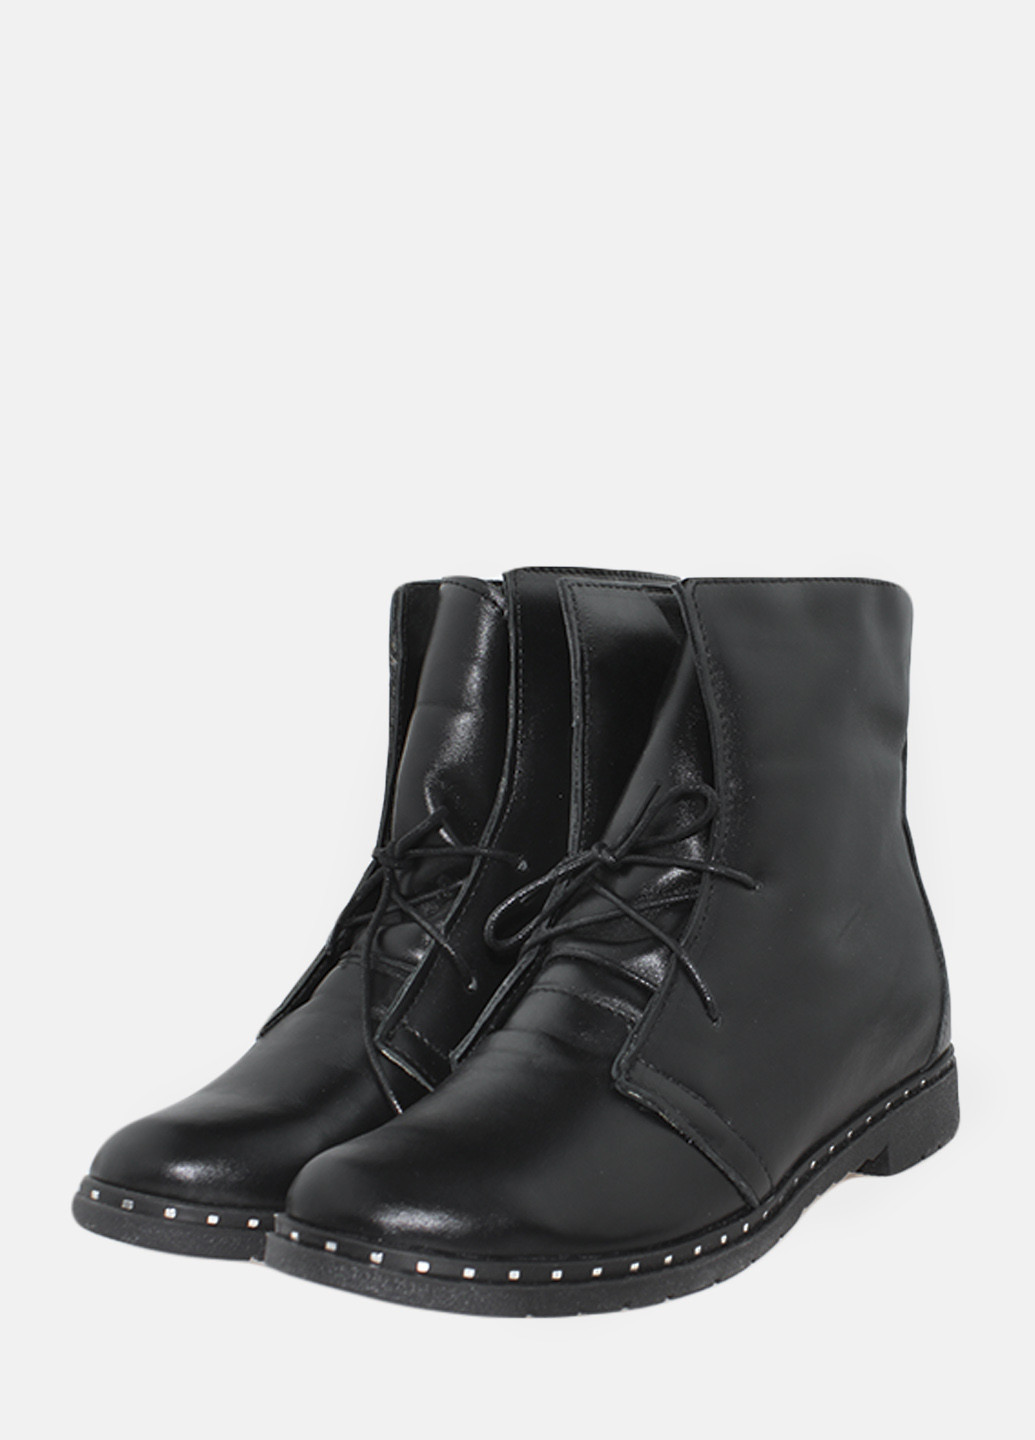 Зимние ботинки rg18-55940 черный Gampr